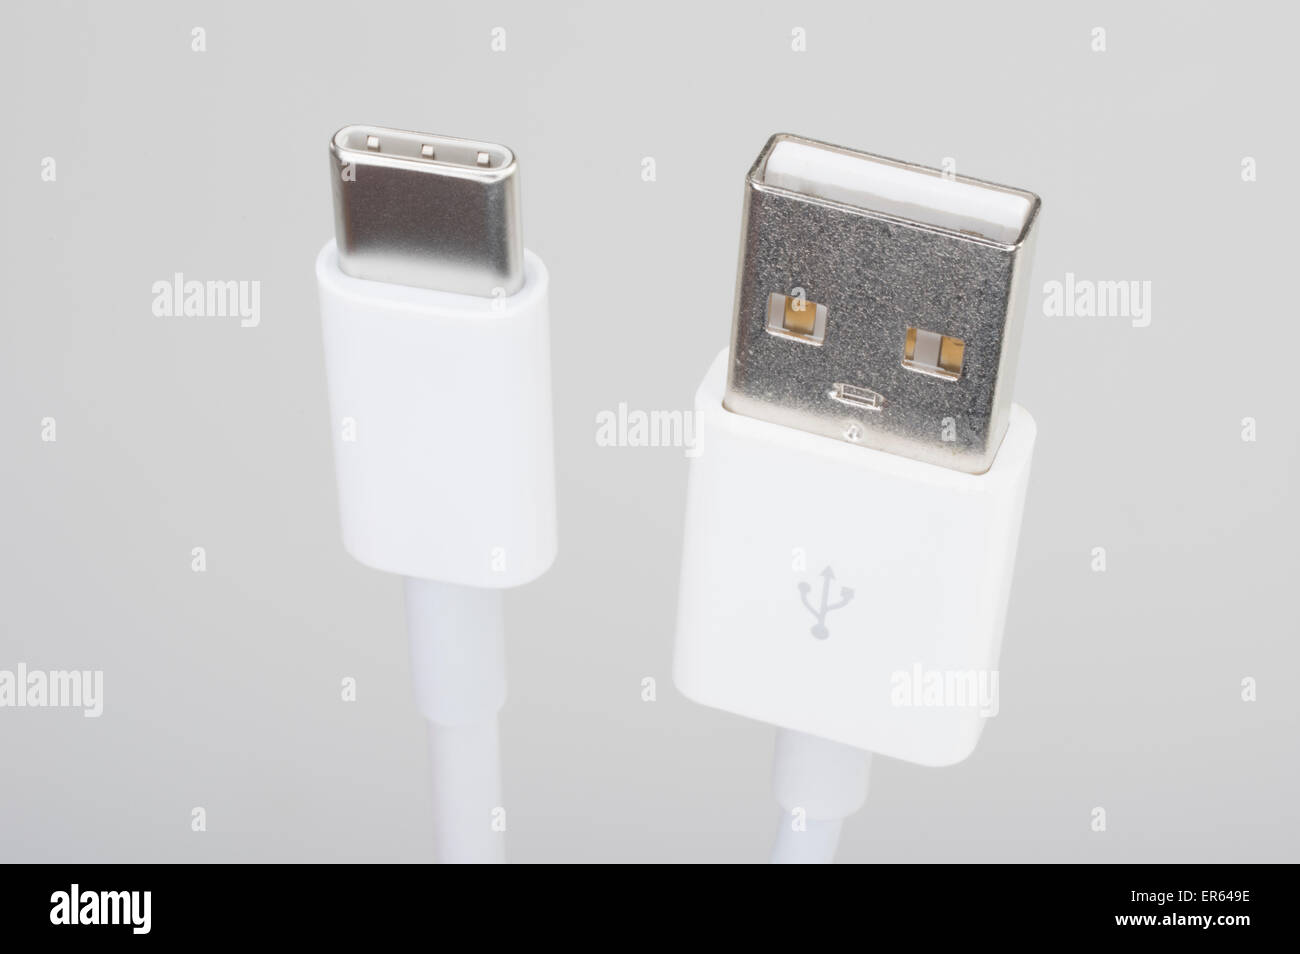 USB Apple-C connecteur USB de type C et une prise USB standard Banque D'Images